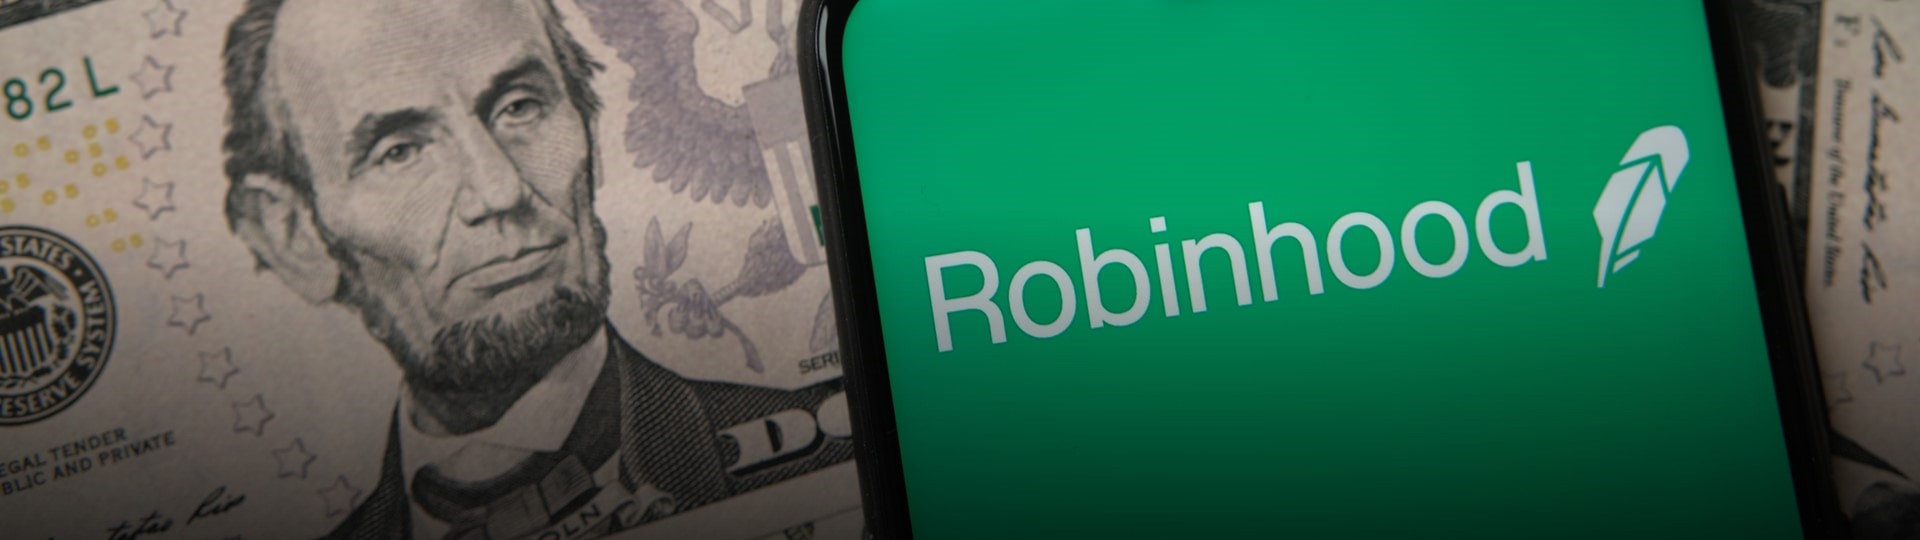 Společnost Robinhood získala prodejem akcií 2,1 miliardy dolarů